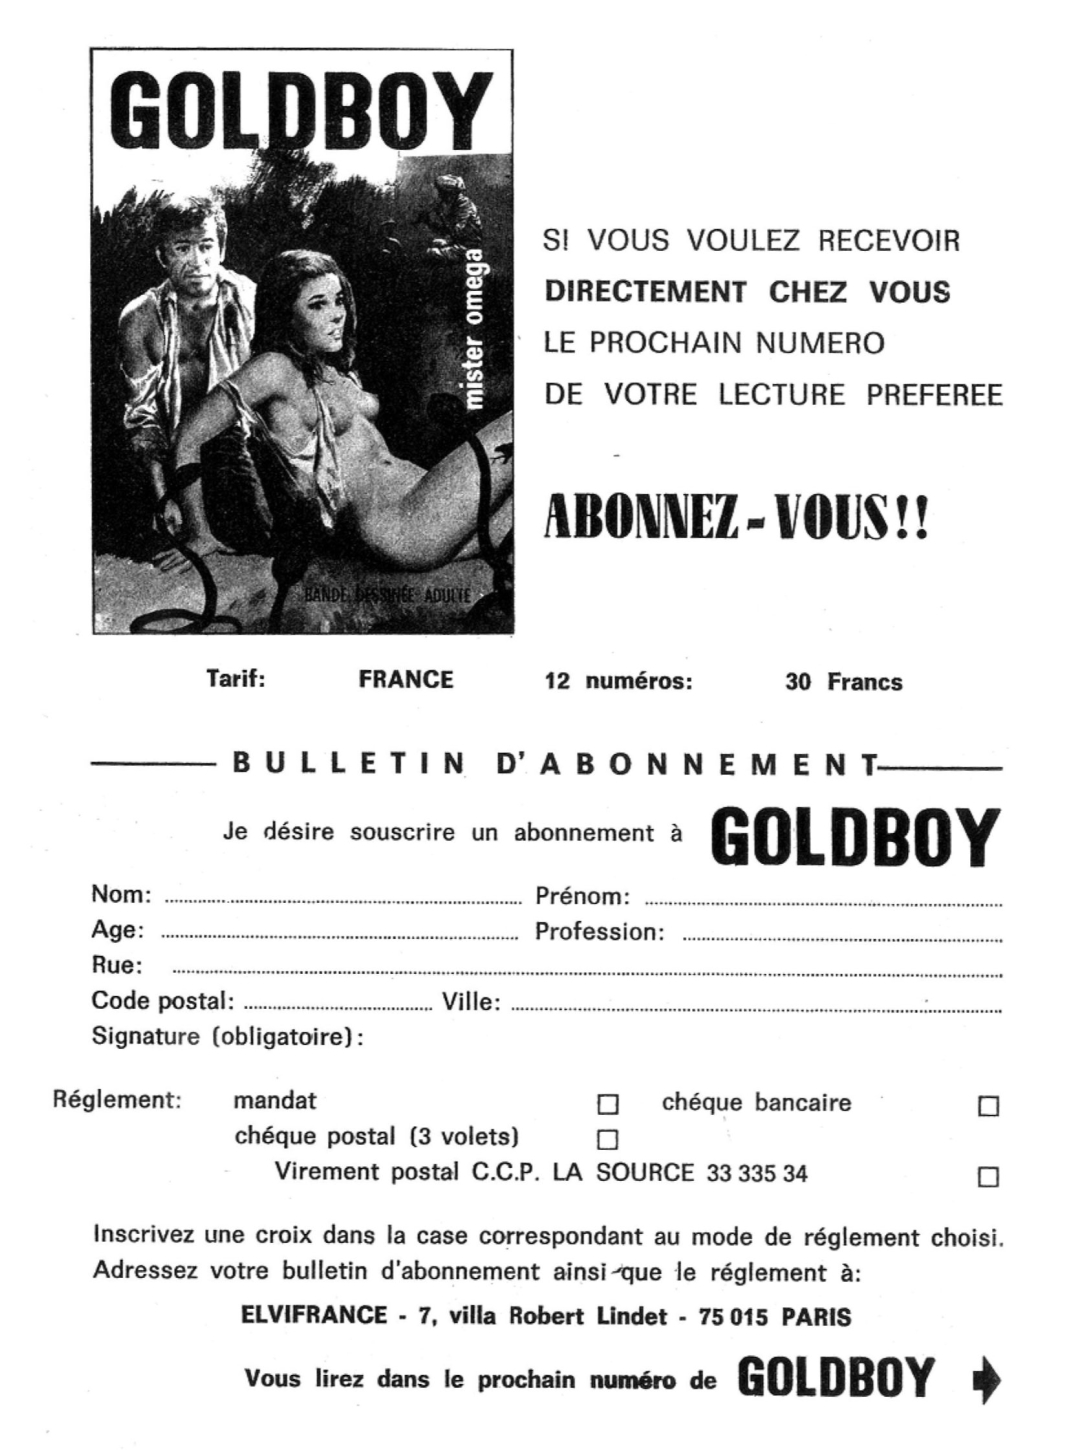 GOLDBOY 037 - Recherchez Goldboy numero d'image 121